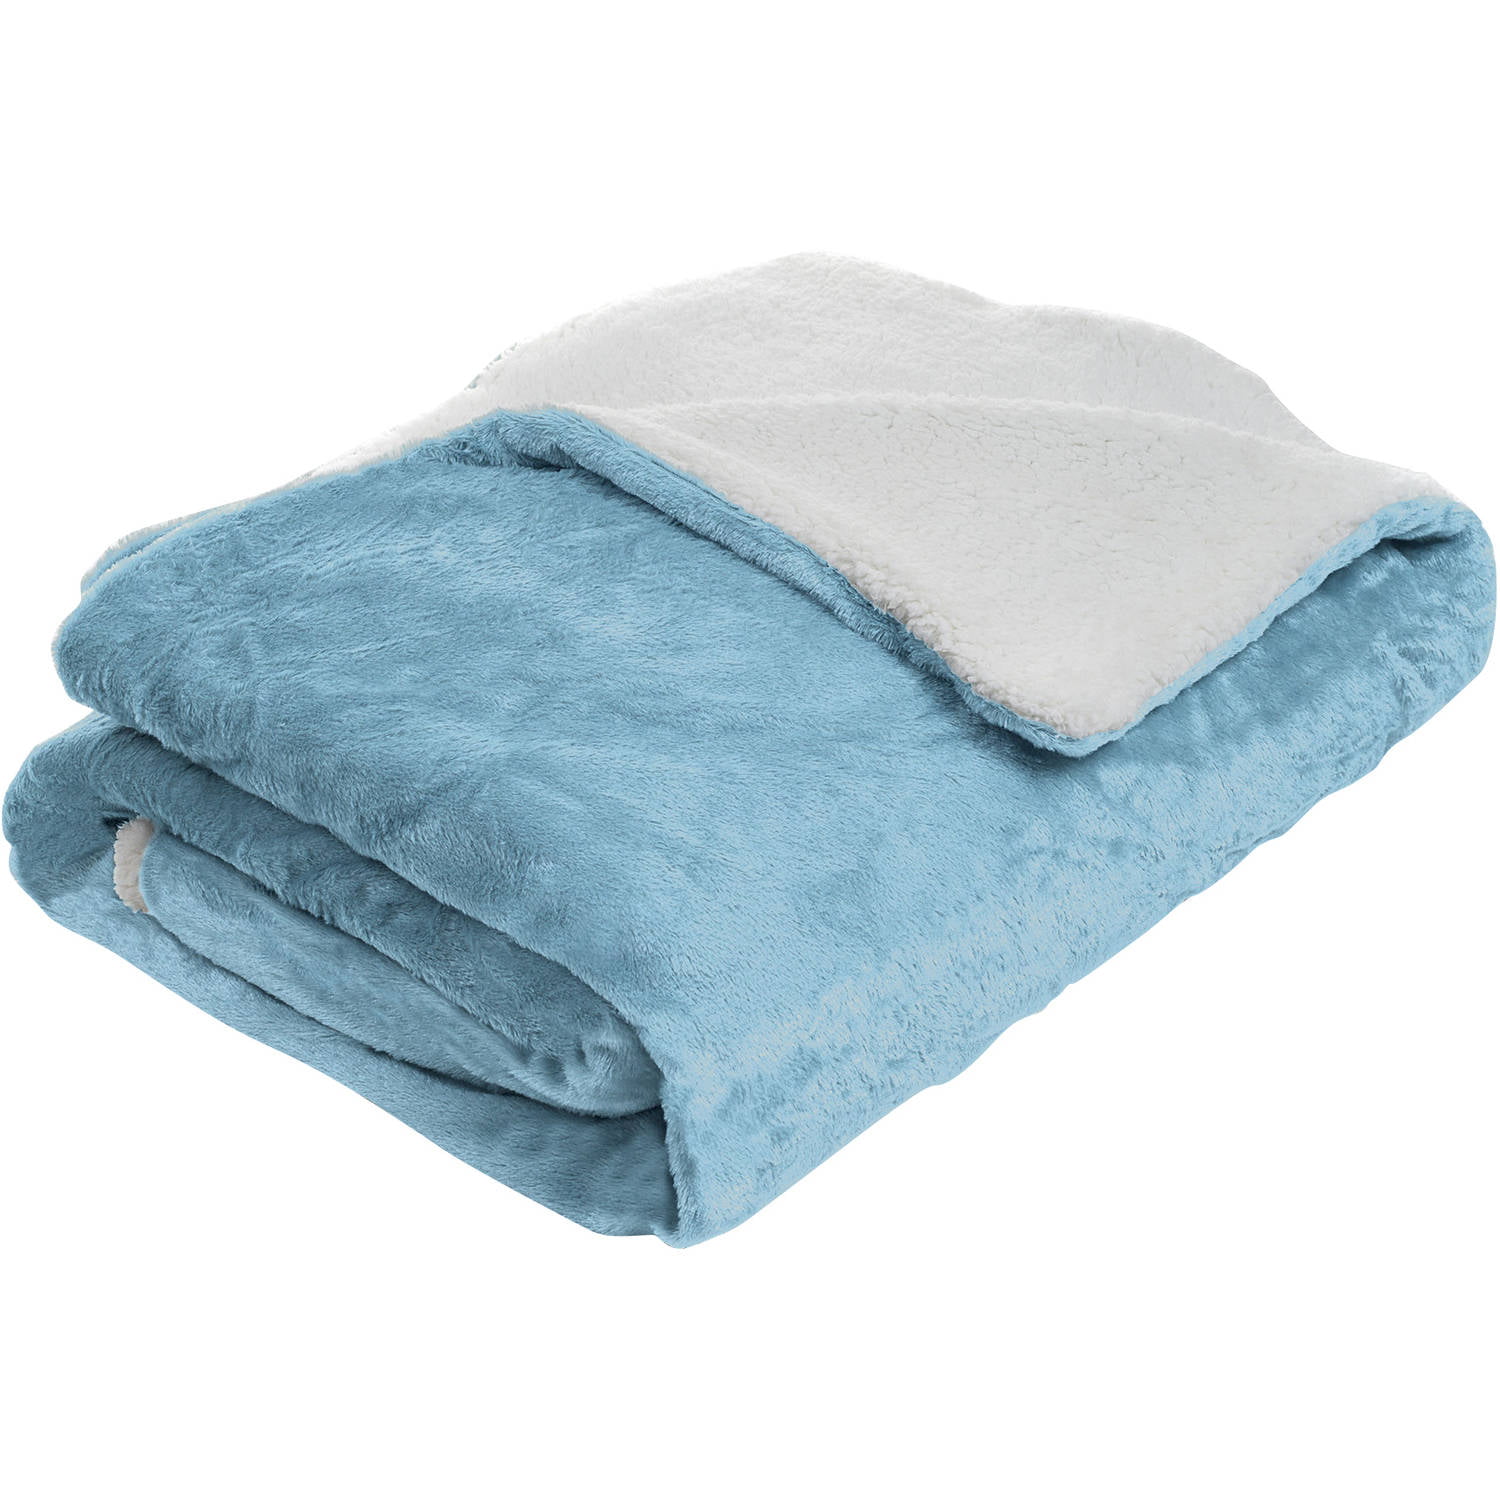 Somerset Home Fleece Blanket With Sherpa Backing Walmartcom Walmartcom